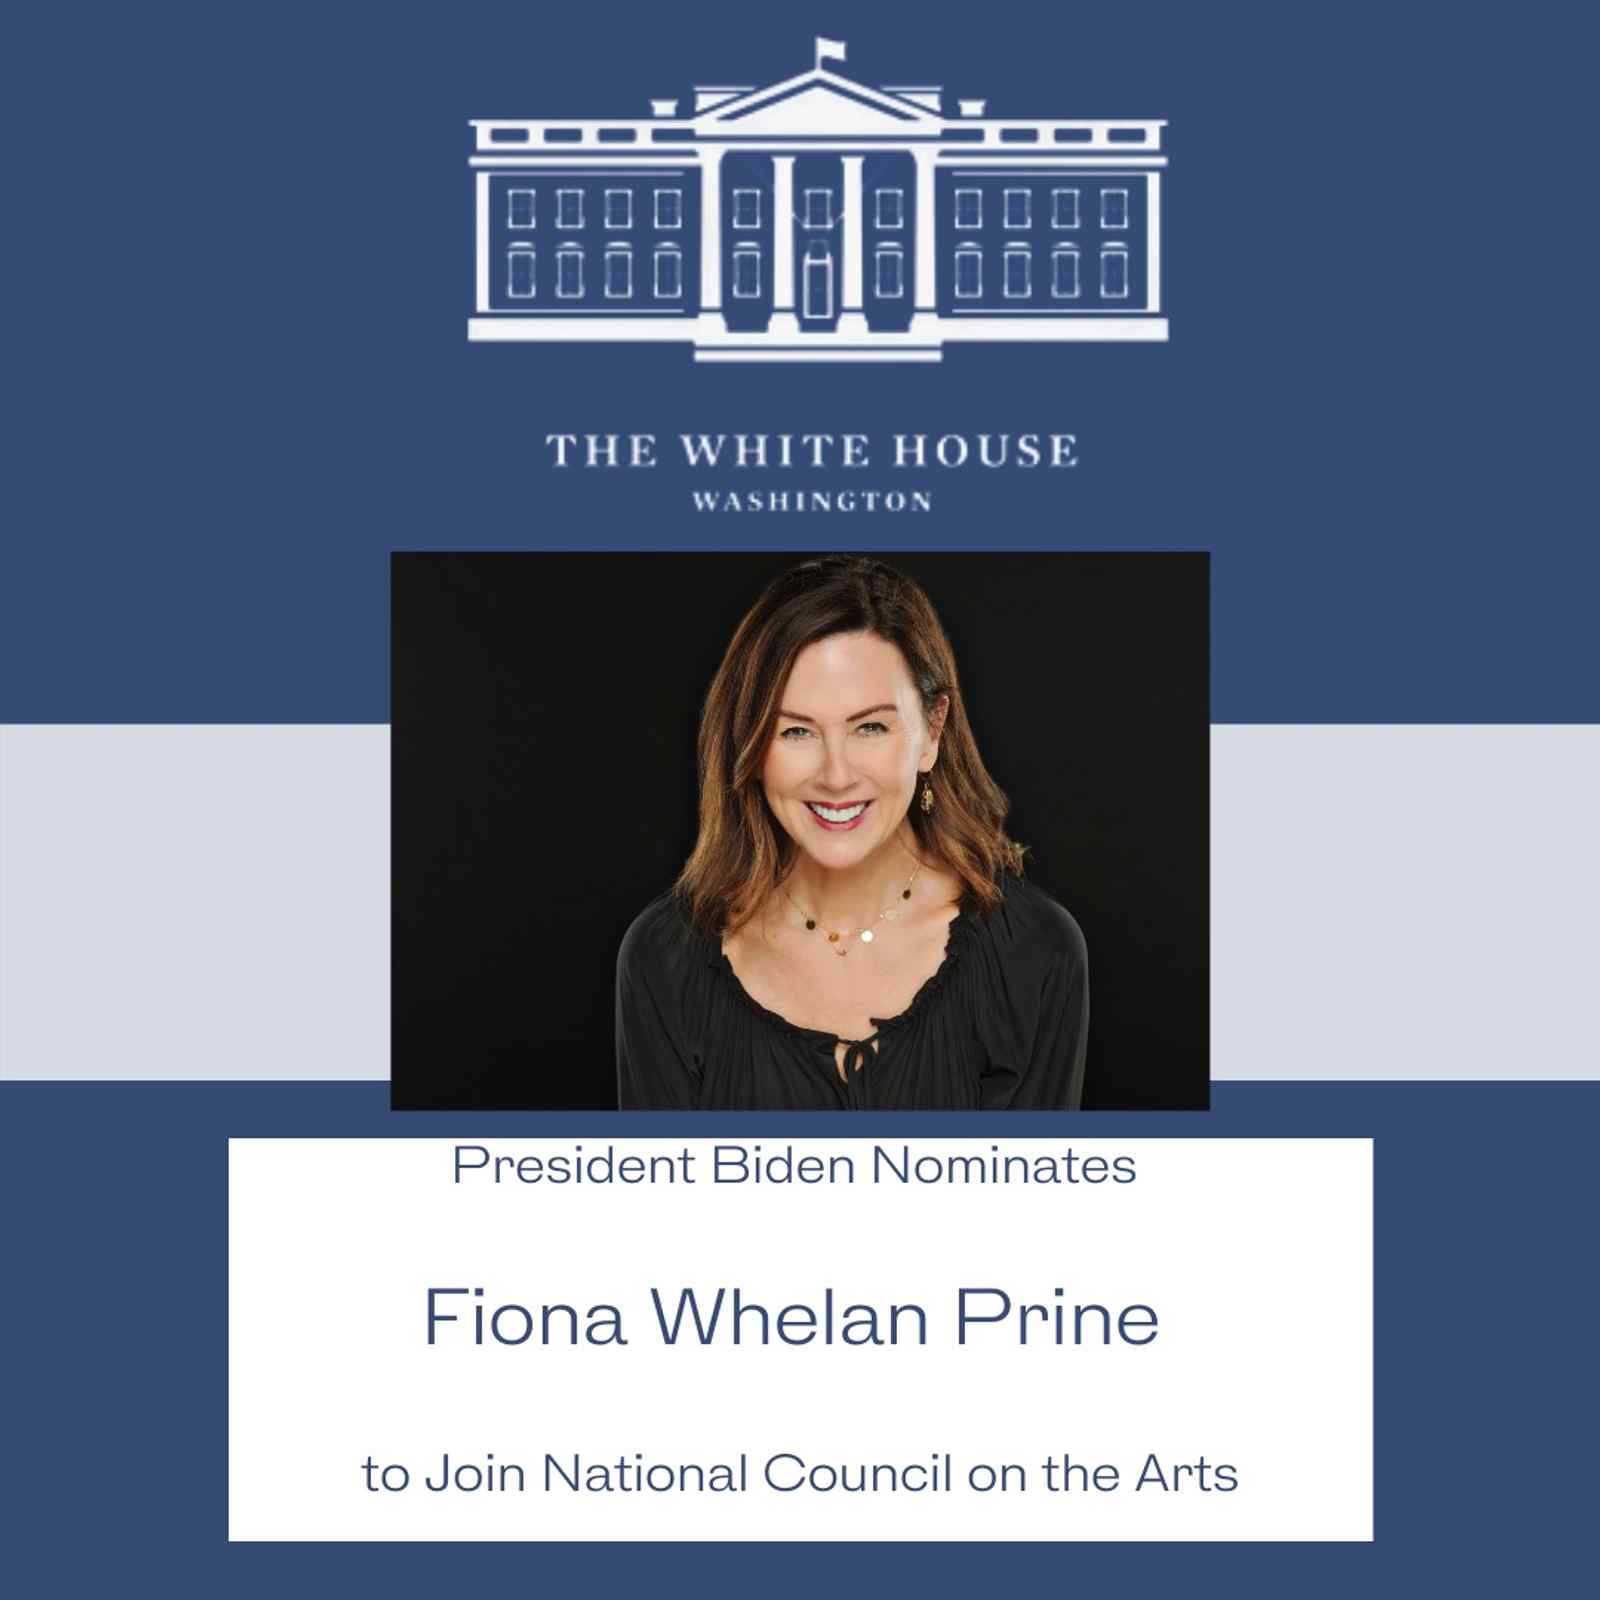 President Biden Nominates Fiona Whelan Prine